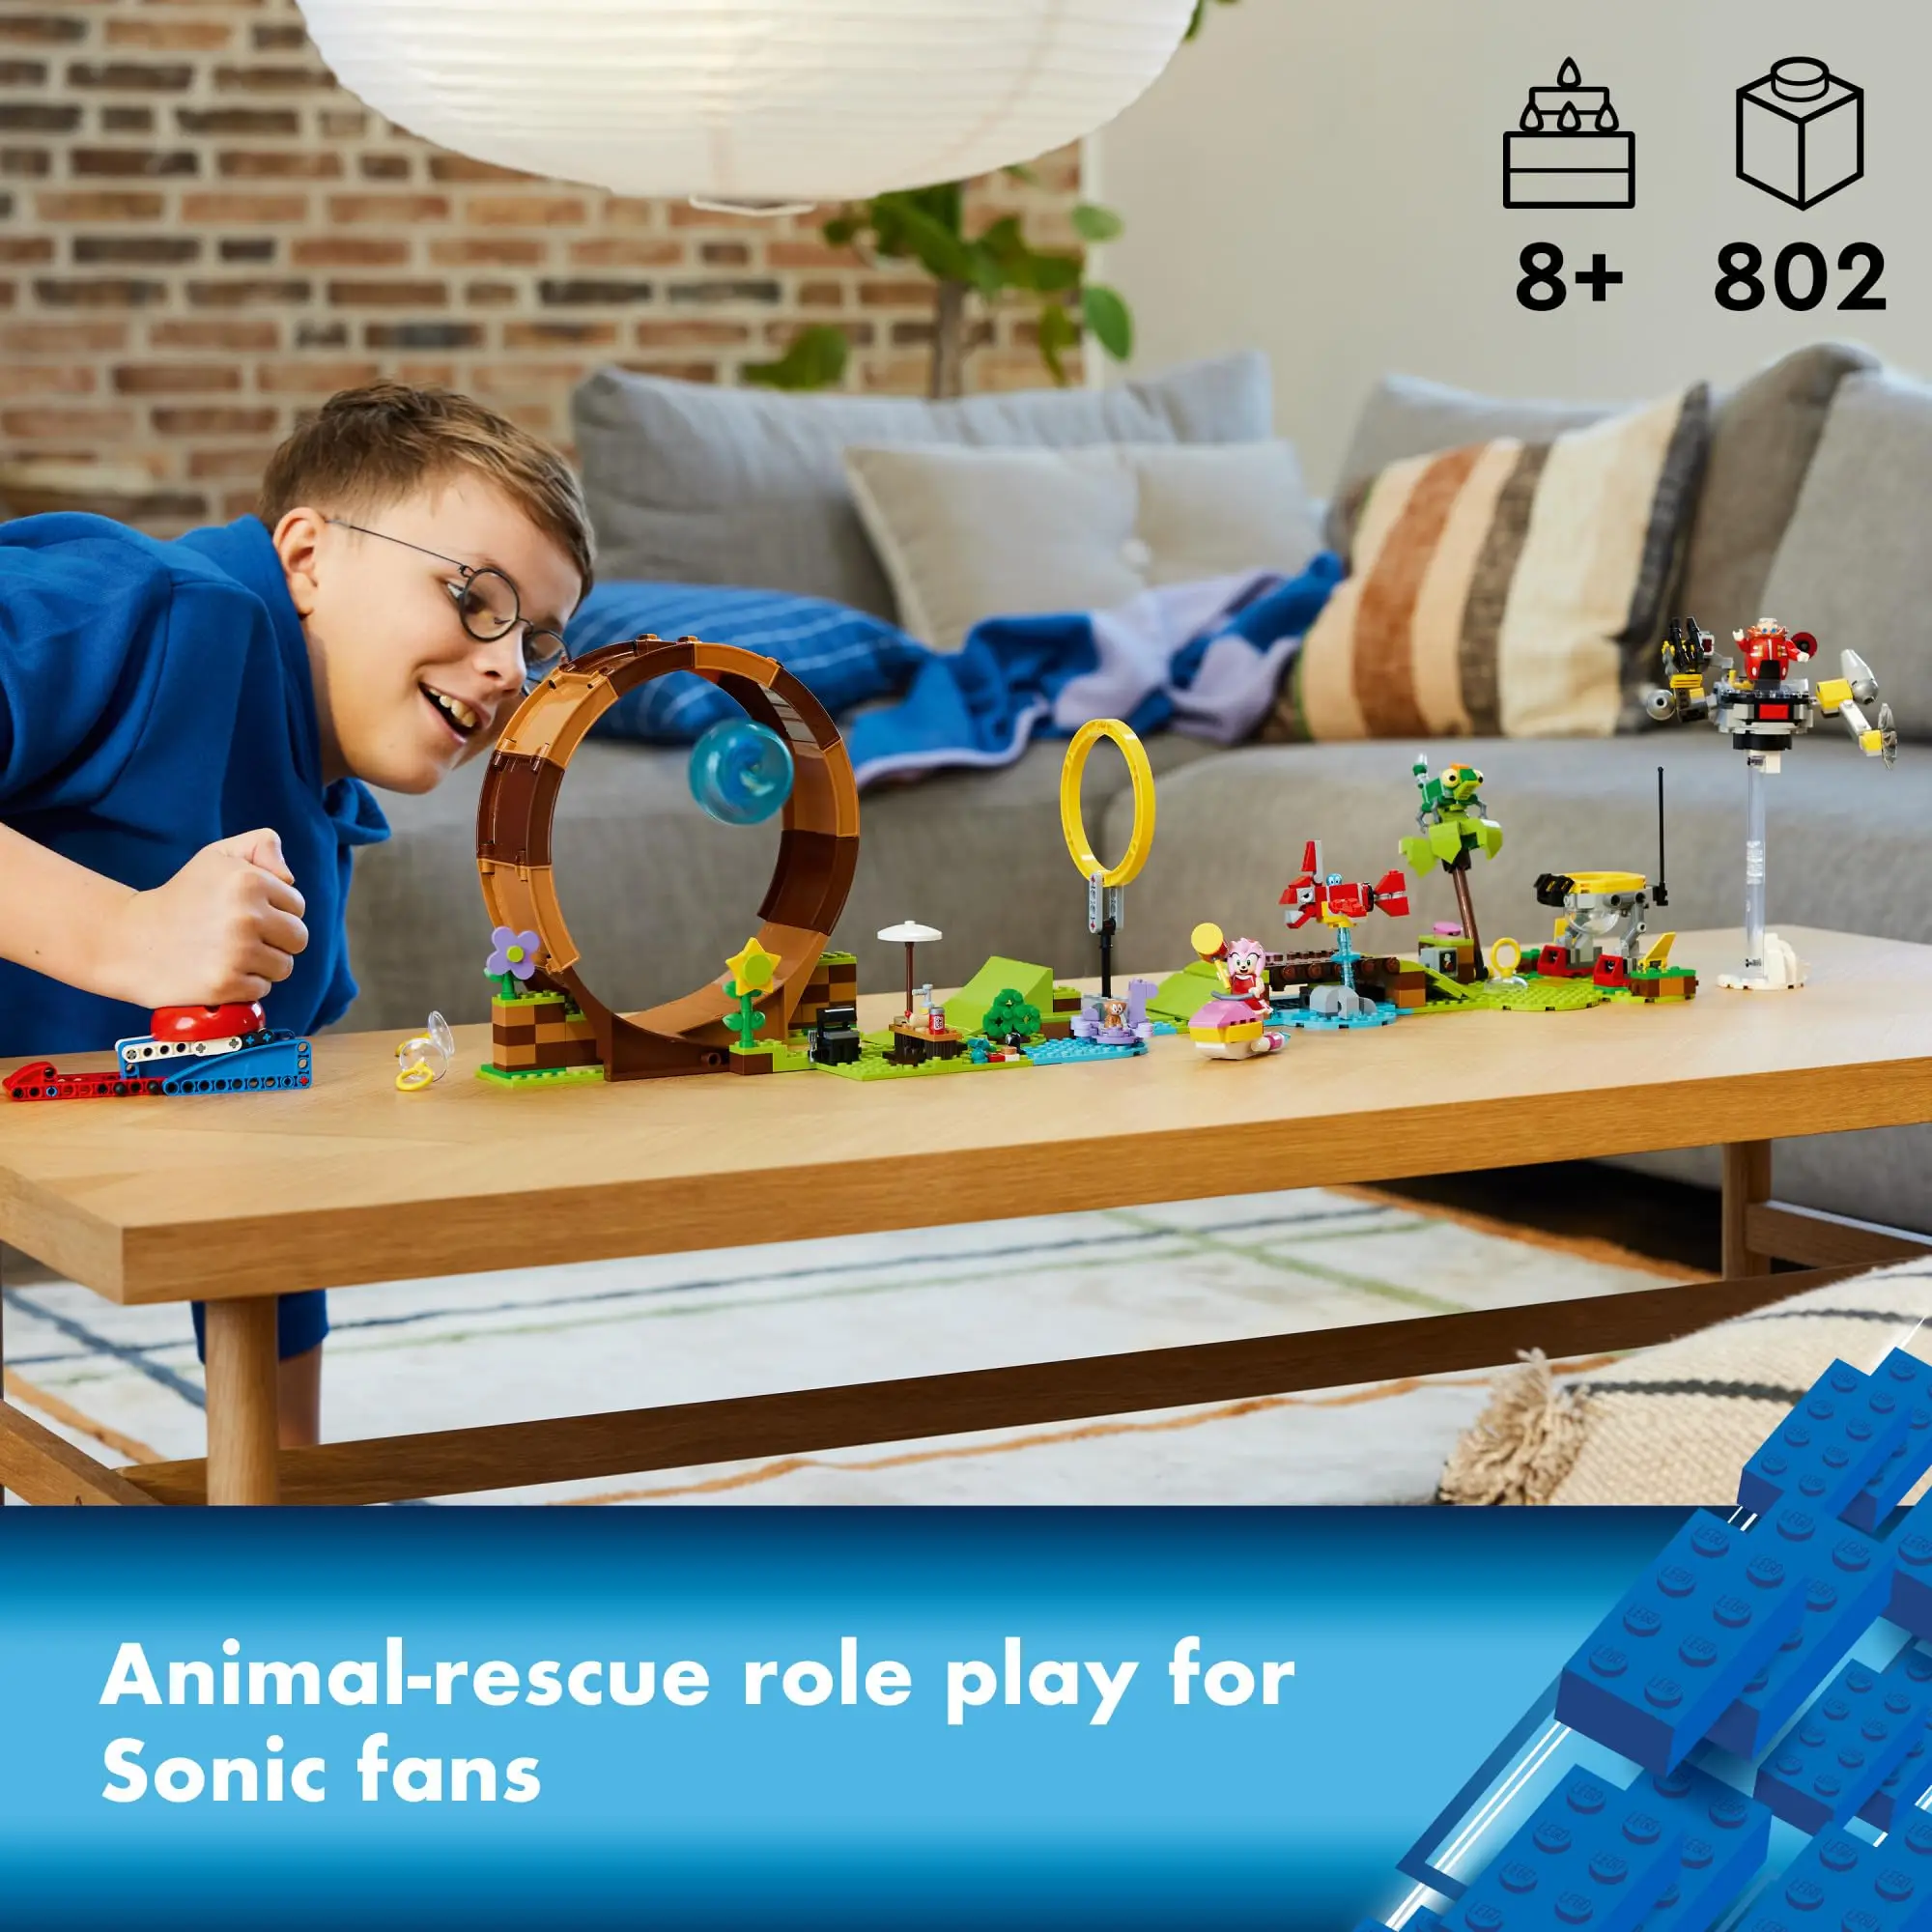 Compre lego sonic the hedgehog de alta qualidade com desconto e frete  grátis no AliExpress!